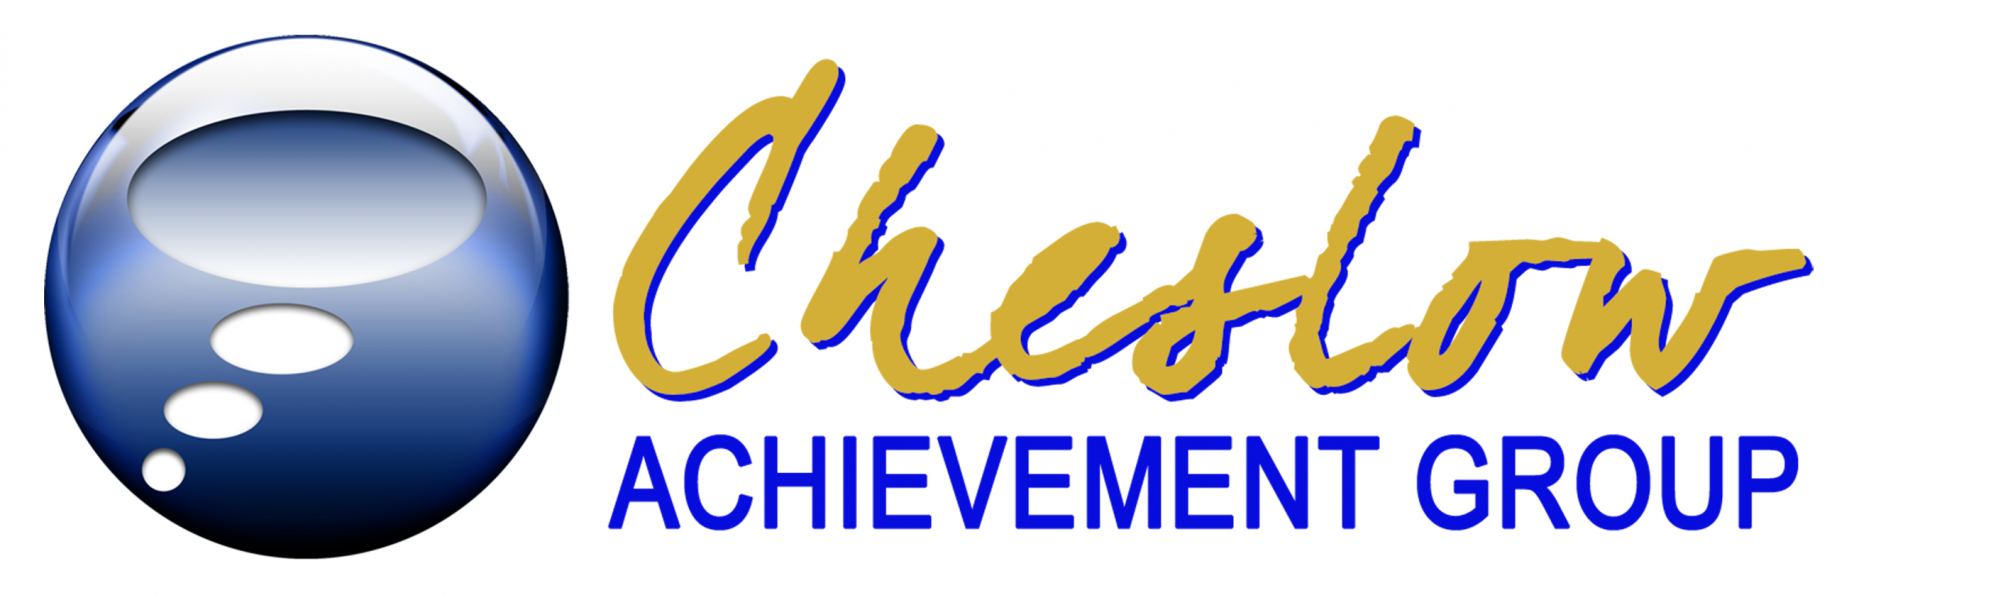 debcheslow Logo